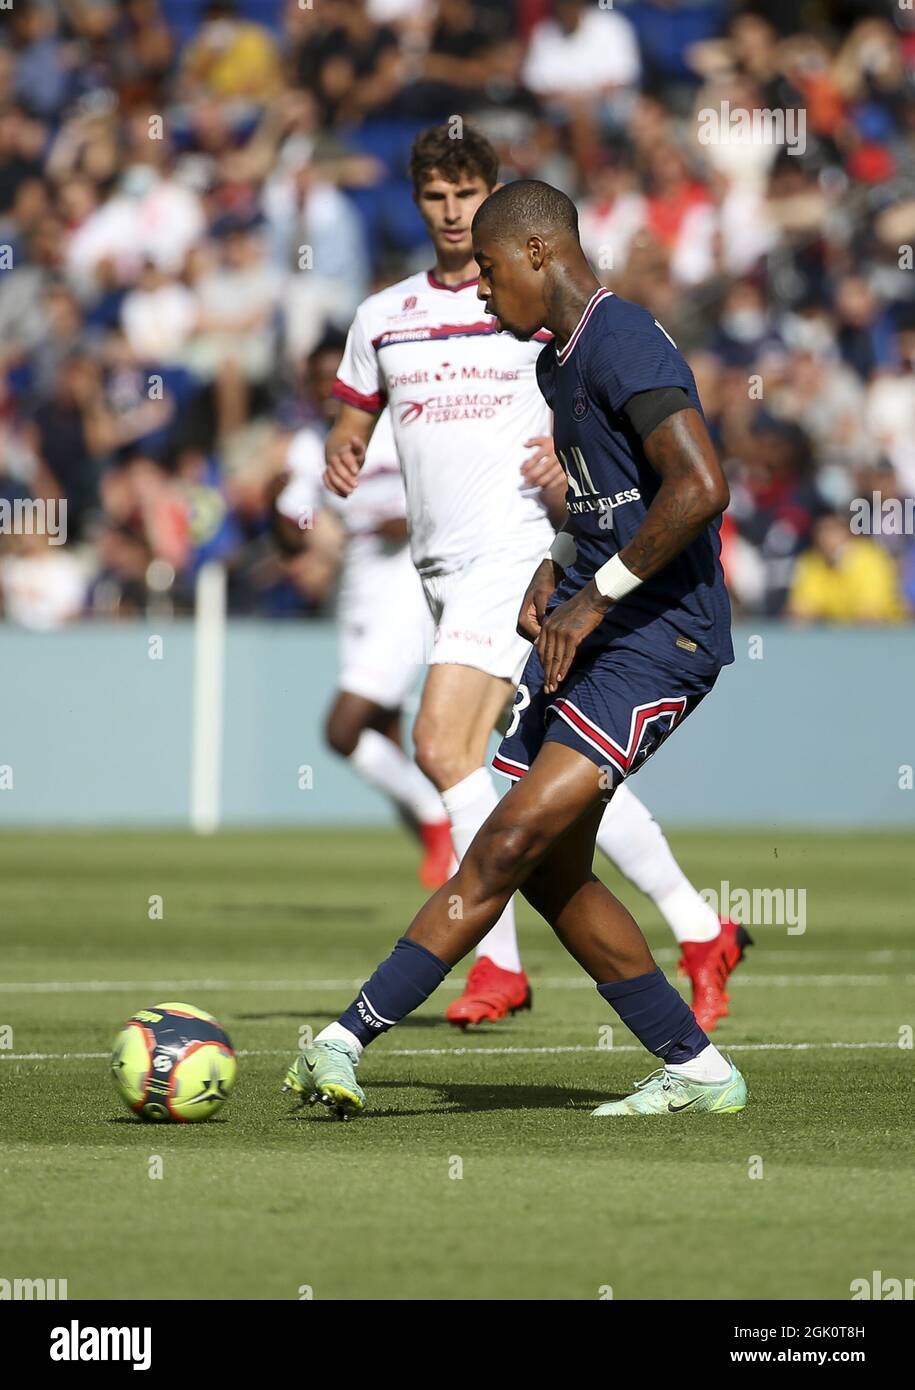 Presnel Kimpembe von PSG während des französischen Ligue-1-Fußballspiels zwischen Paris Saint-Germain (PSG) und Clermont Foot 63 am 11. September 2021 im Stadion Parc des Princes in Paris, Frankreich Stockfoto